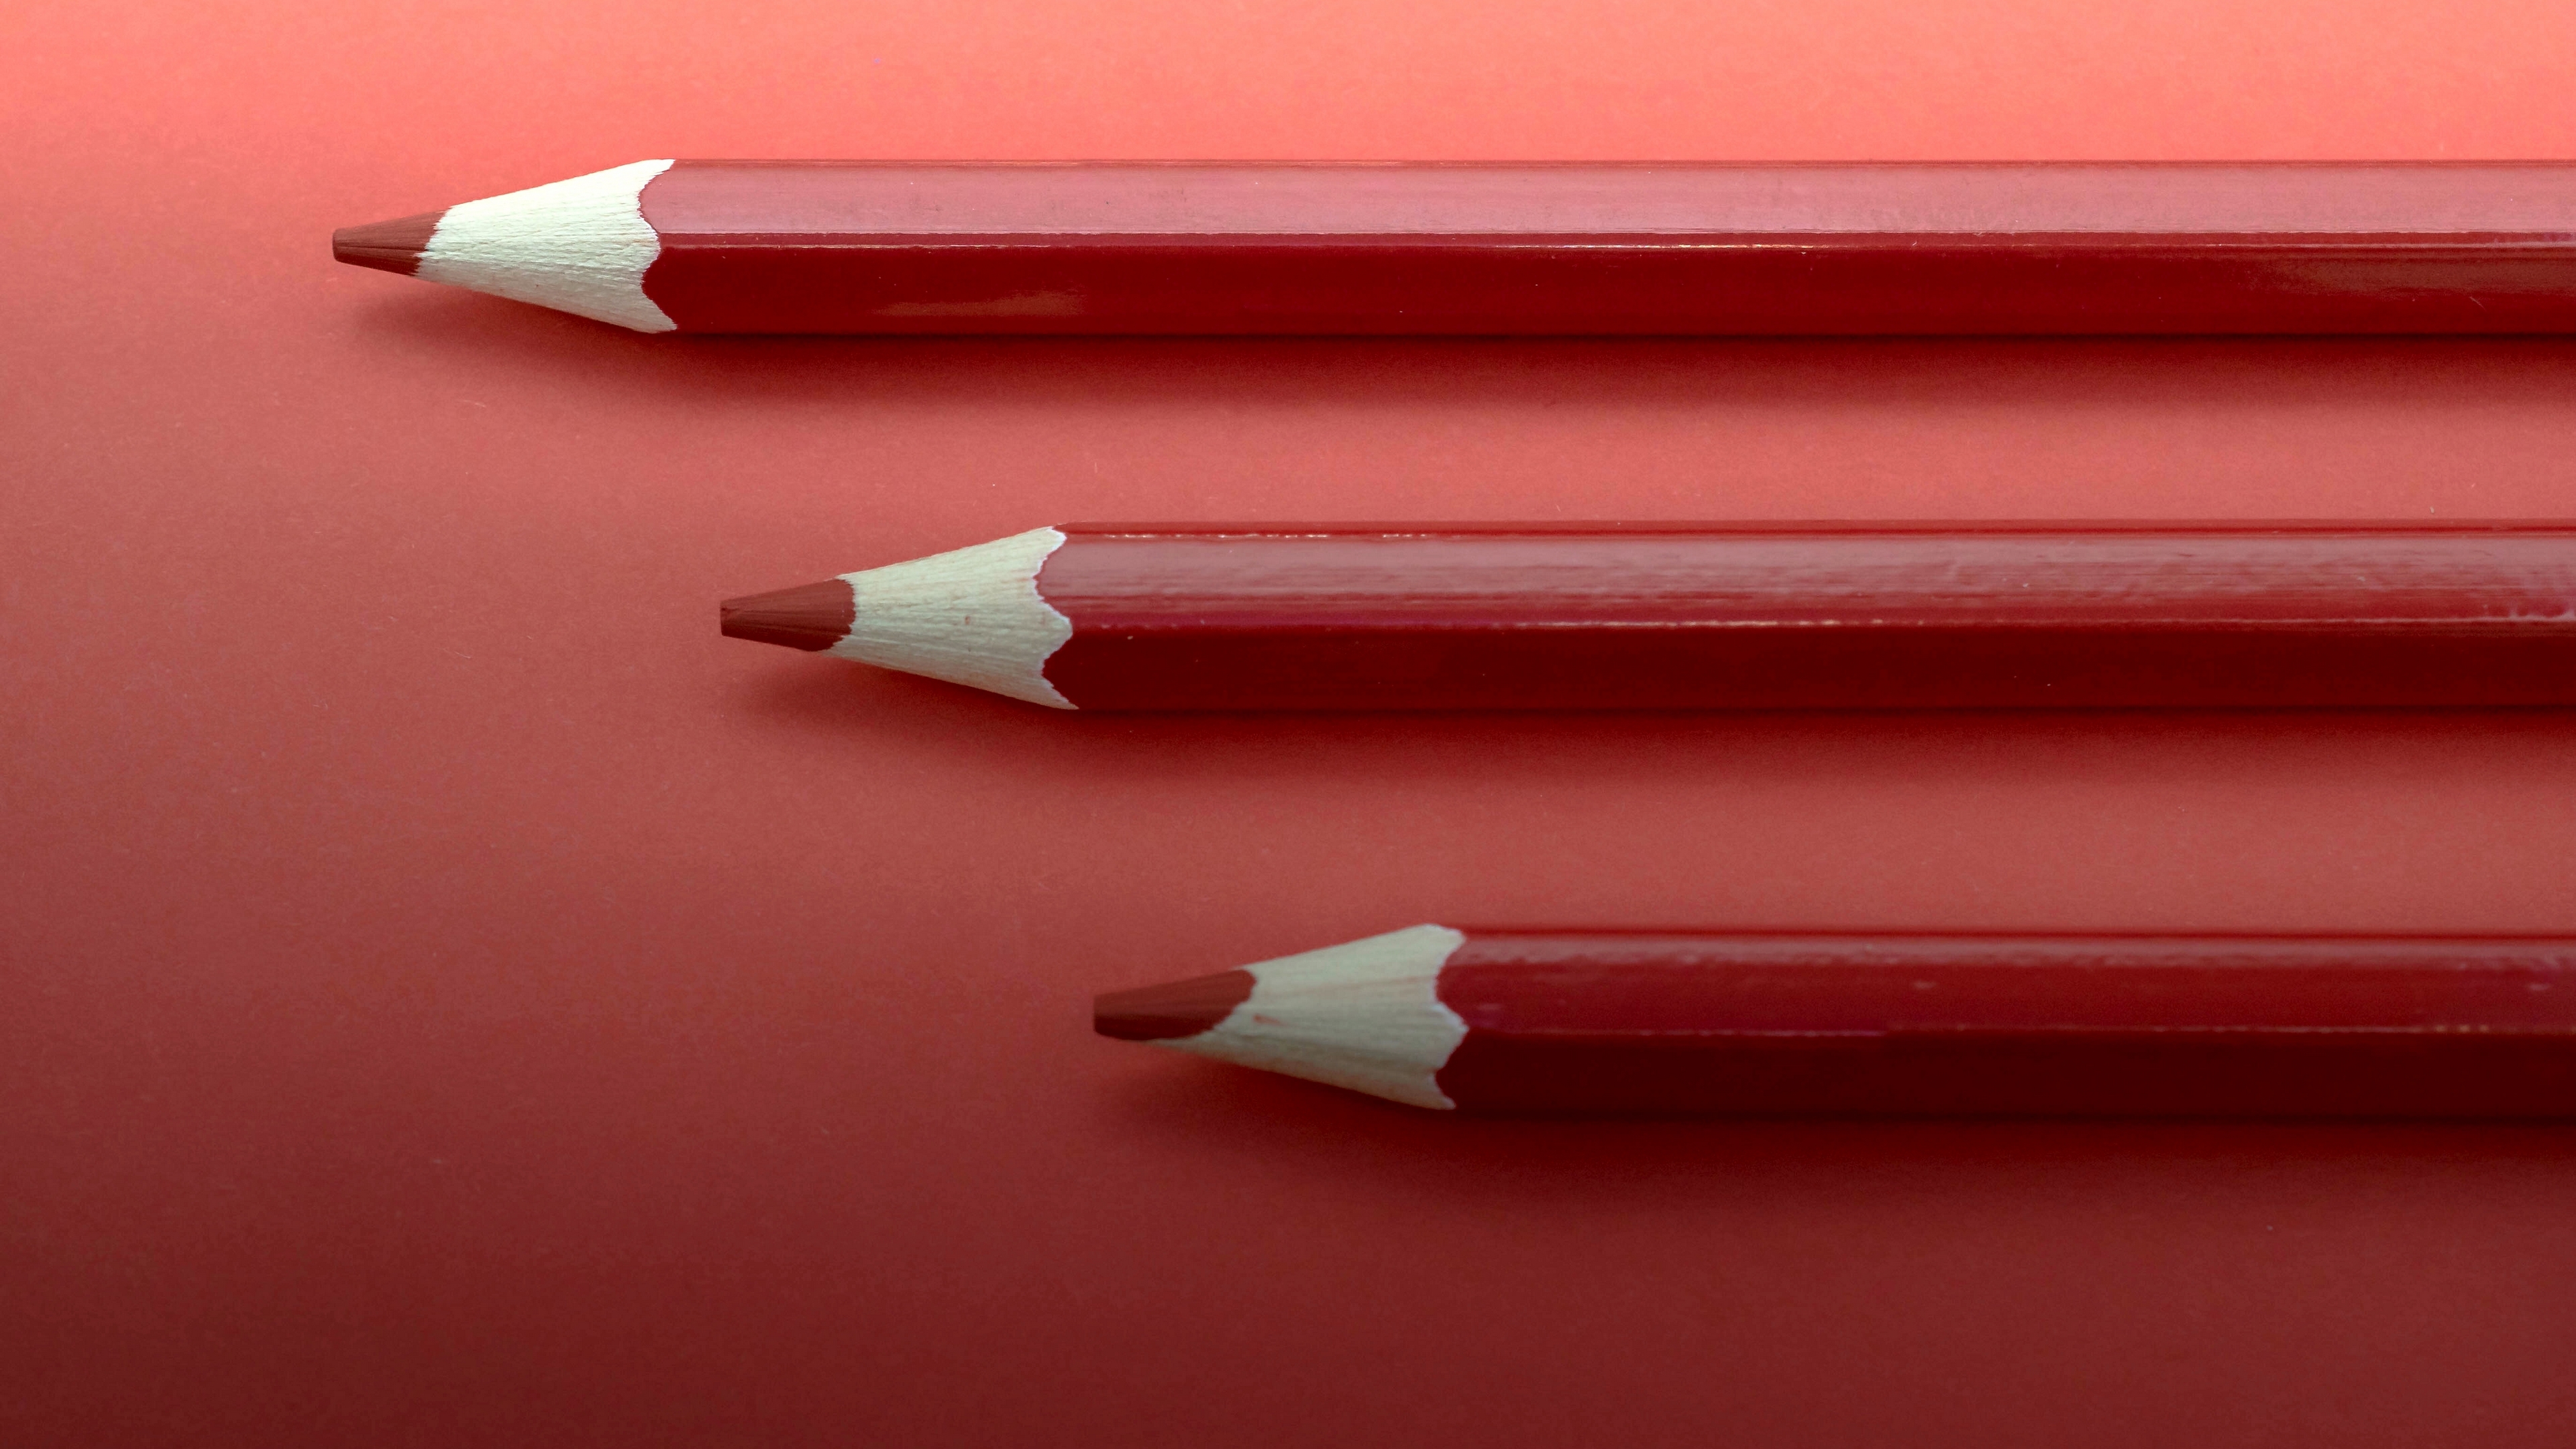 تصویر سه مداد قرمز رنگ برای ویندوز 12 پر طرفدار